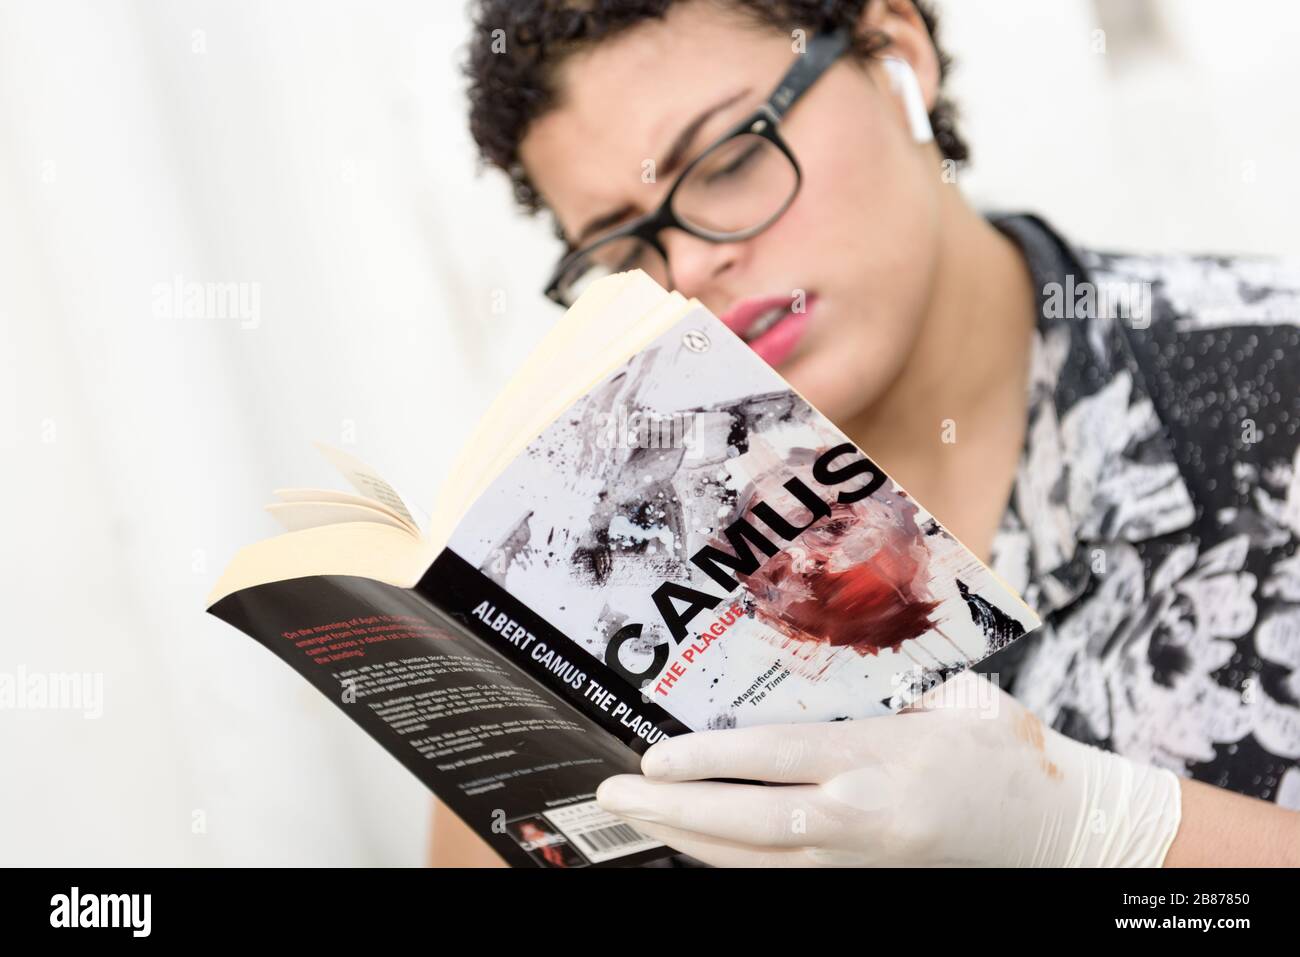 Il romanzo del filosofo esistenziale e assurdo Albert Camus, la peste, sta godendo di una rinascita nella pandemia globale di Coronavirus del 2020 Foto Stock